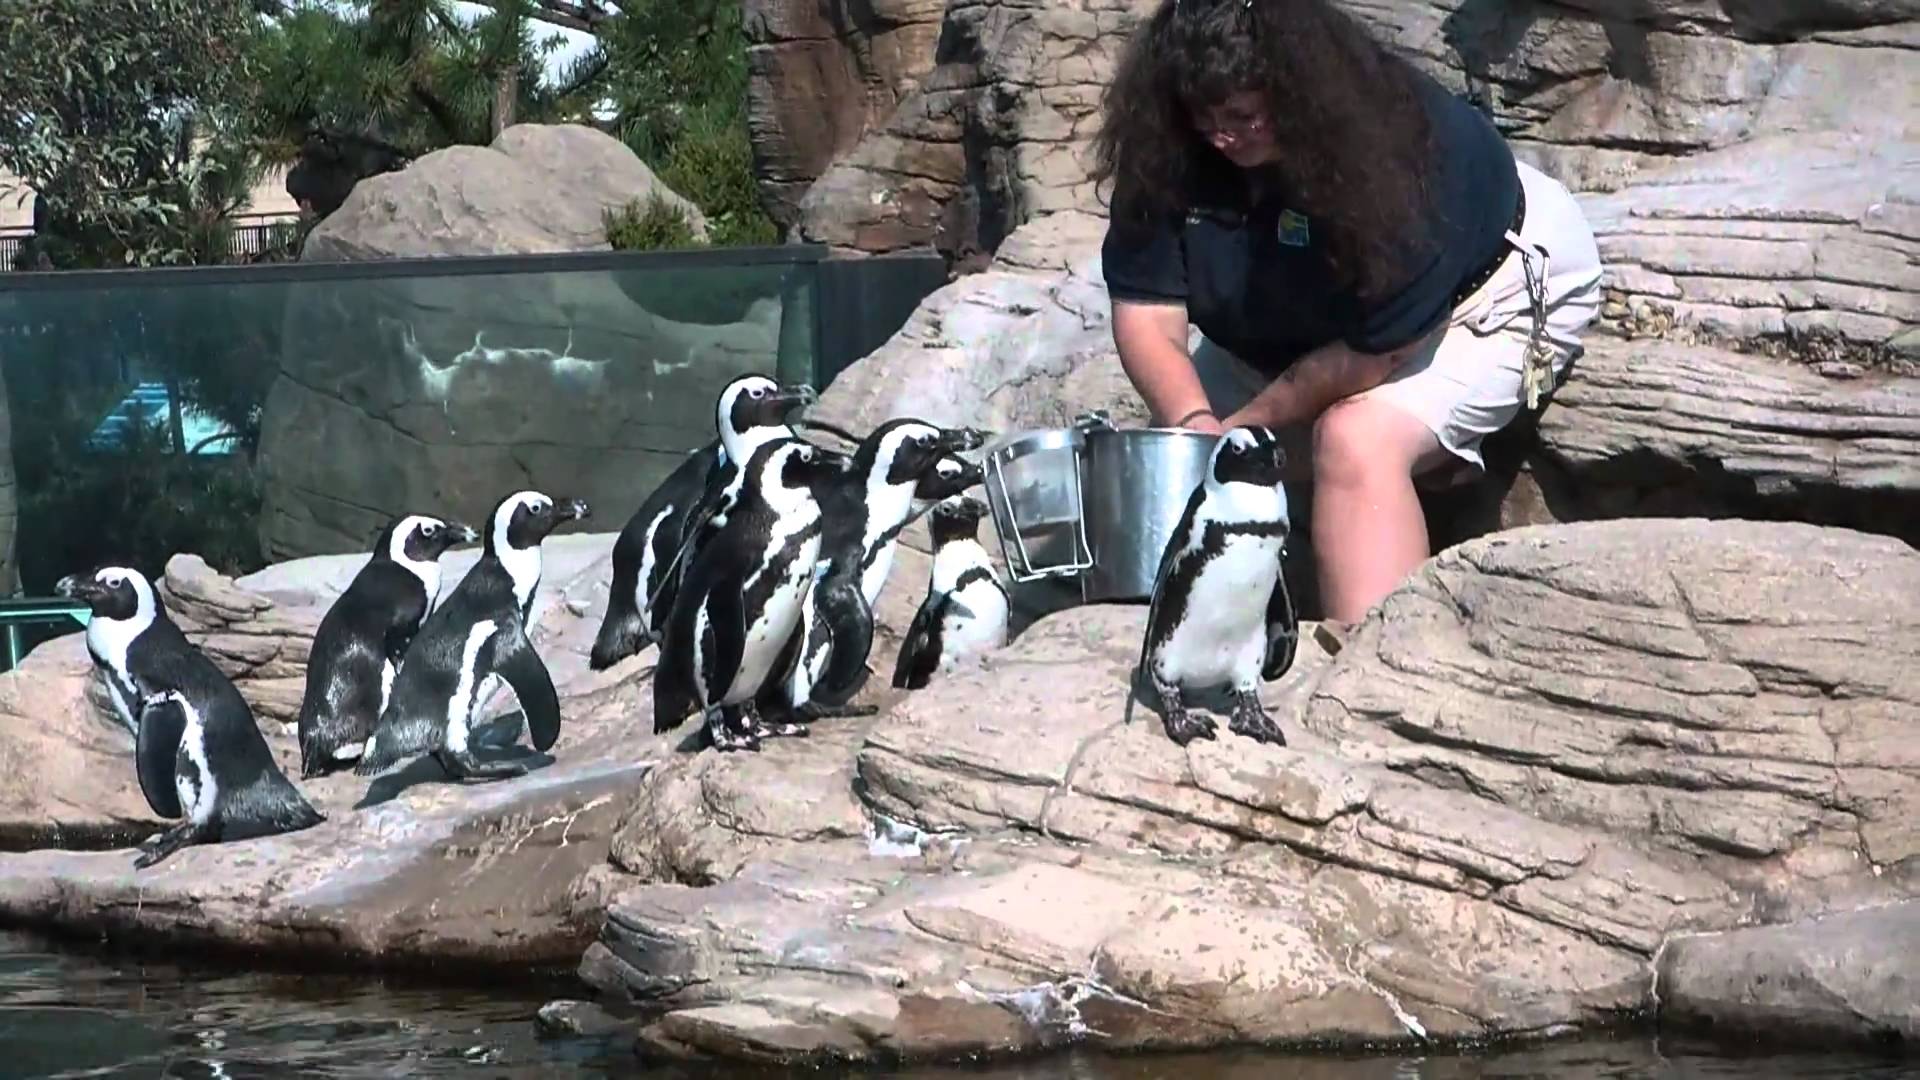 Penguin Feeding Really Cute! - YouTube